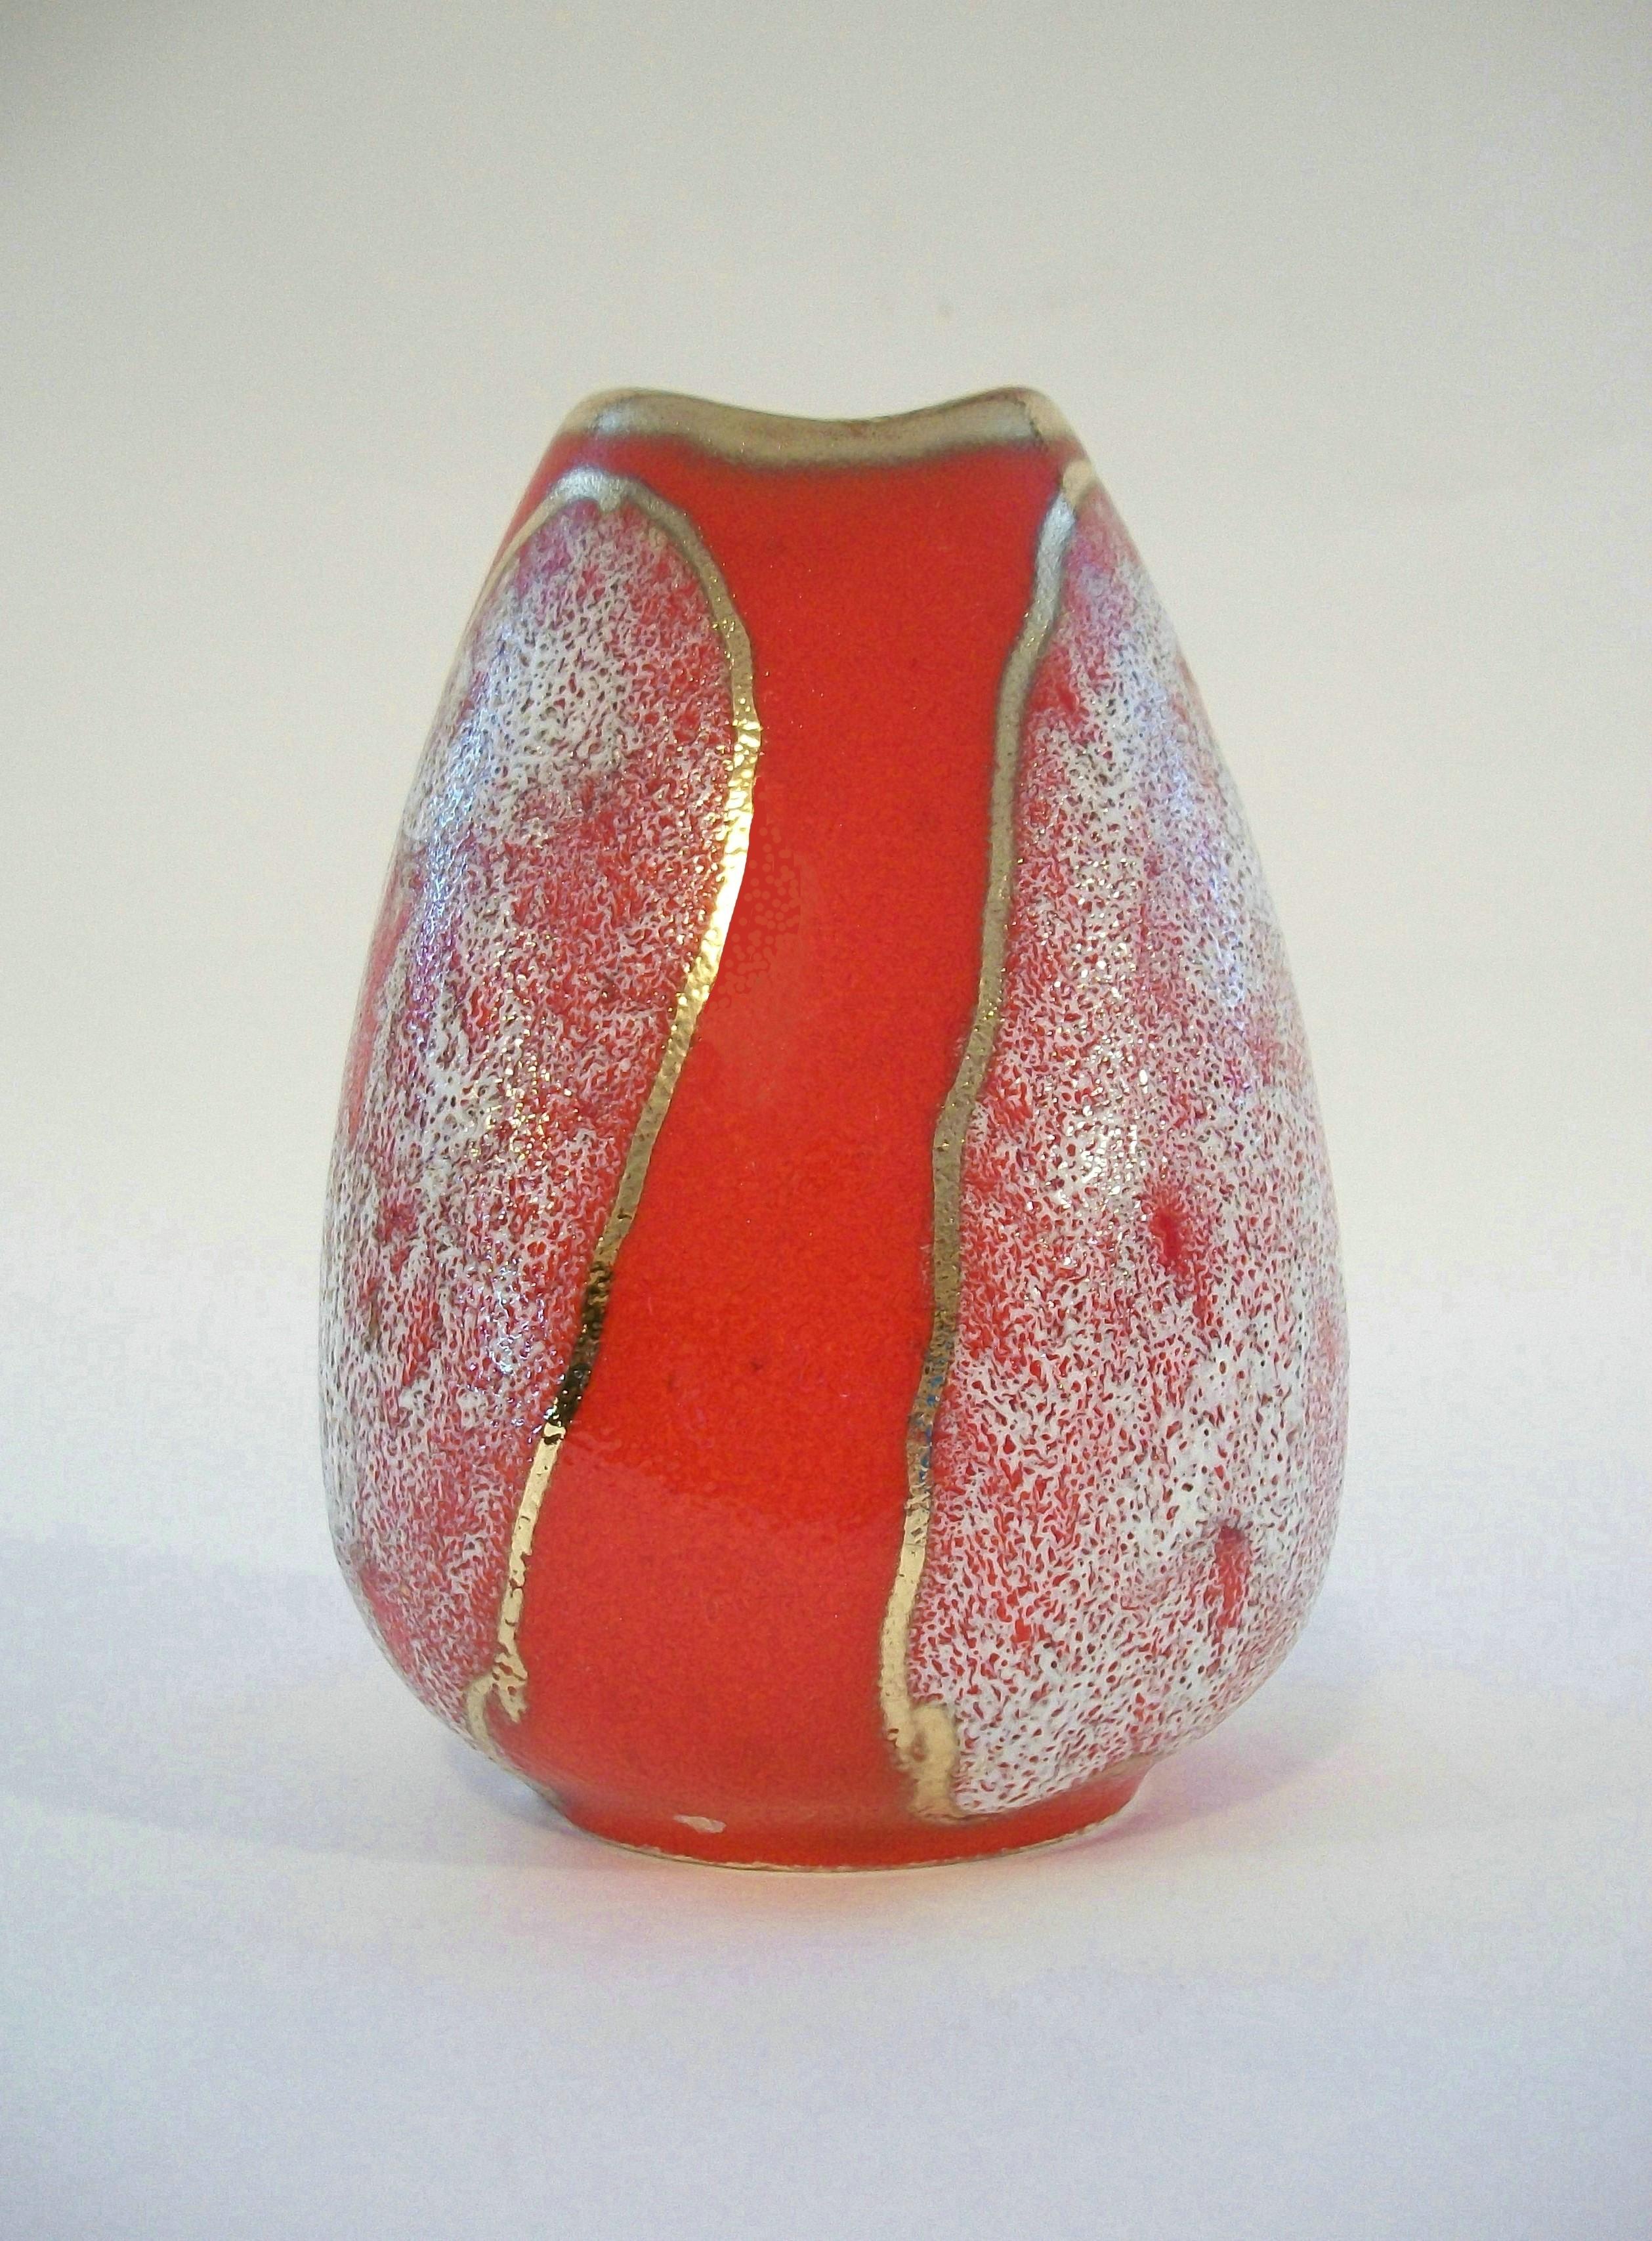 JASBA - Vase du milieu du siècle en céramique émaillée avec des reflets dorés - peint à la main - numéro de modèle 582/15 - ALLEMAGNE - vers les années 1960.

Excellent état vintage - petits défauts de cuisson/glaçure près de la base - pas de perte